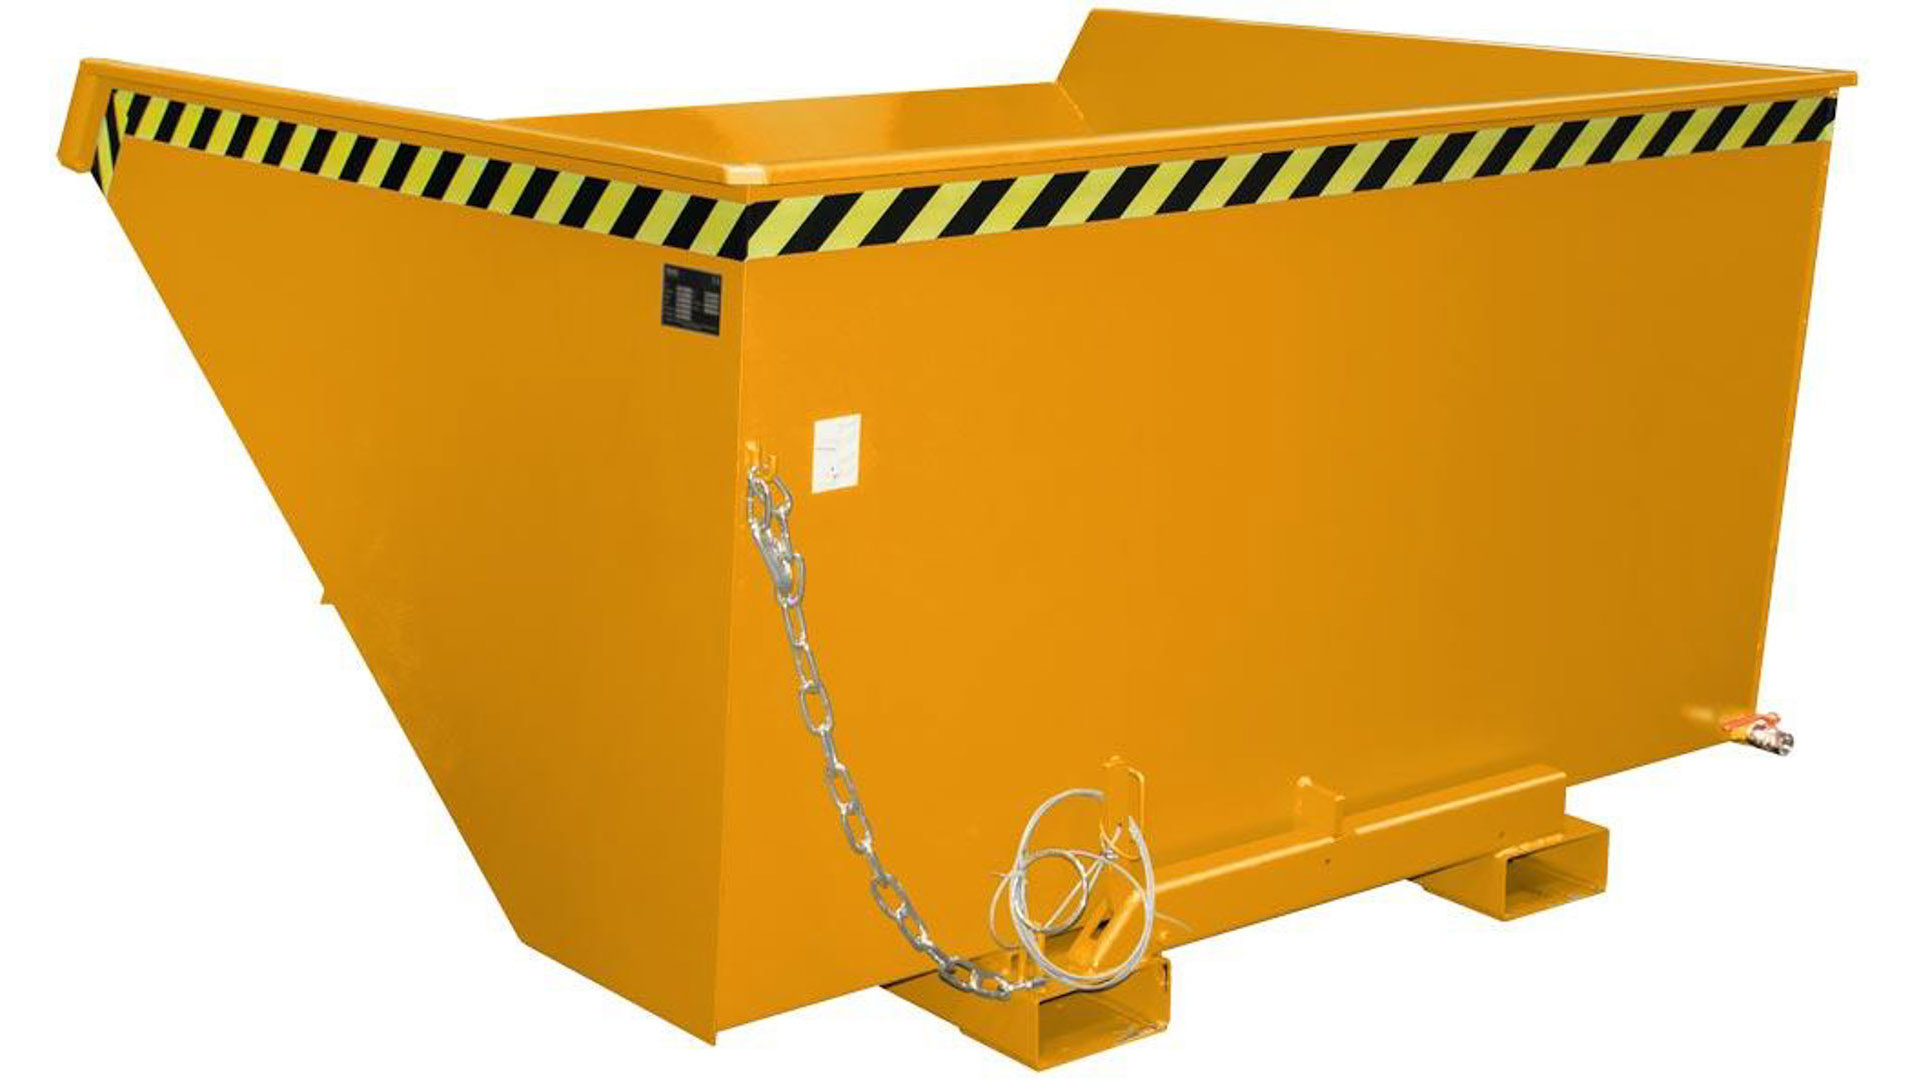 Späne-Selbstkippbehälter mit Abrollsystem, Volumen 0,60 cbm, LxBxH 1260x1070x835 mm, lackiert RAL 2000 orange